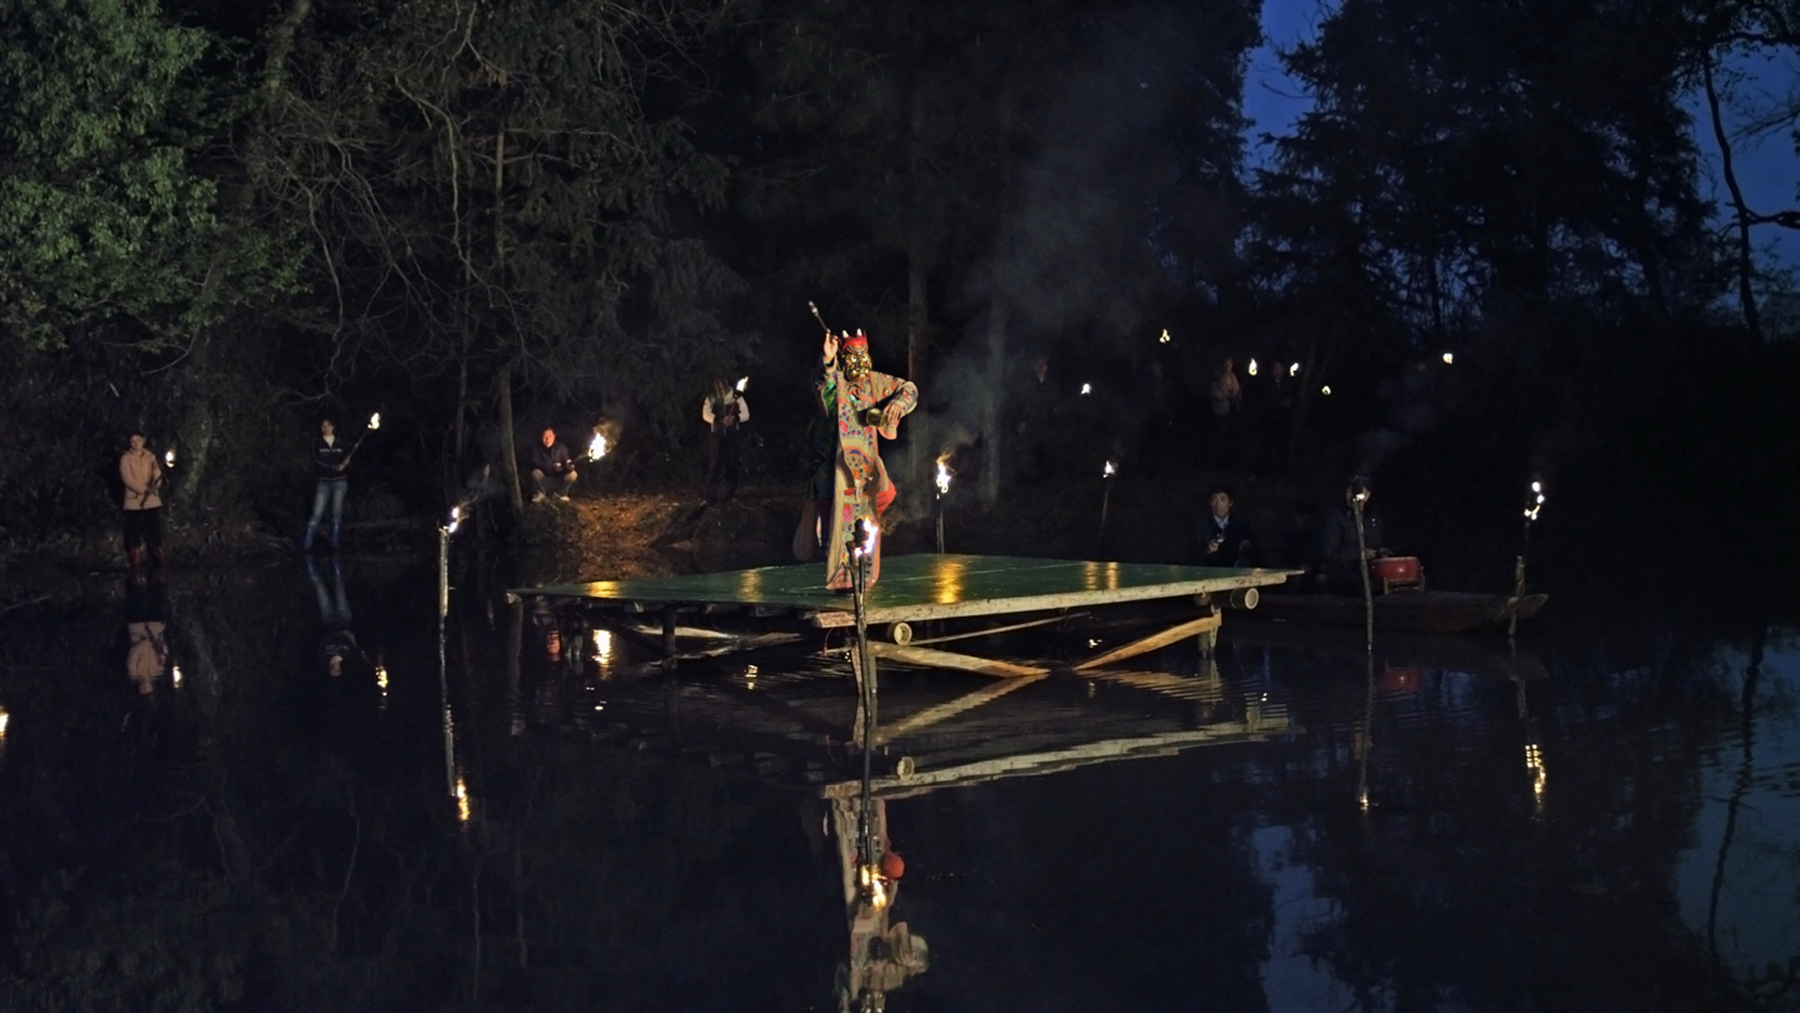 許家維  | 鐵甲元帥 影像擷取畫面：靖思村池塘上的儺舞表演，江西，2013, 2013  ©許家維 的圖說